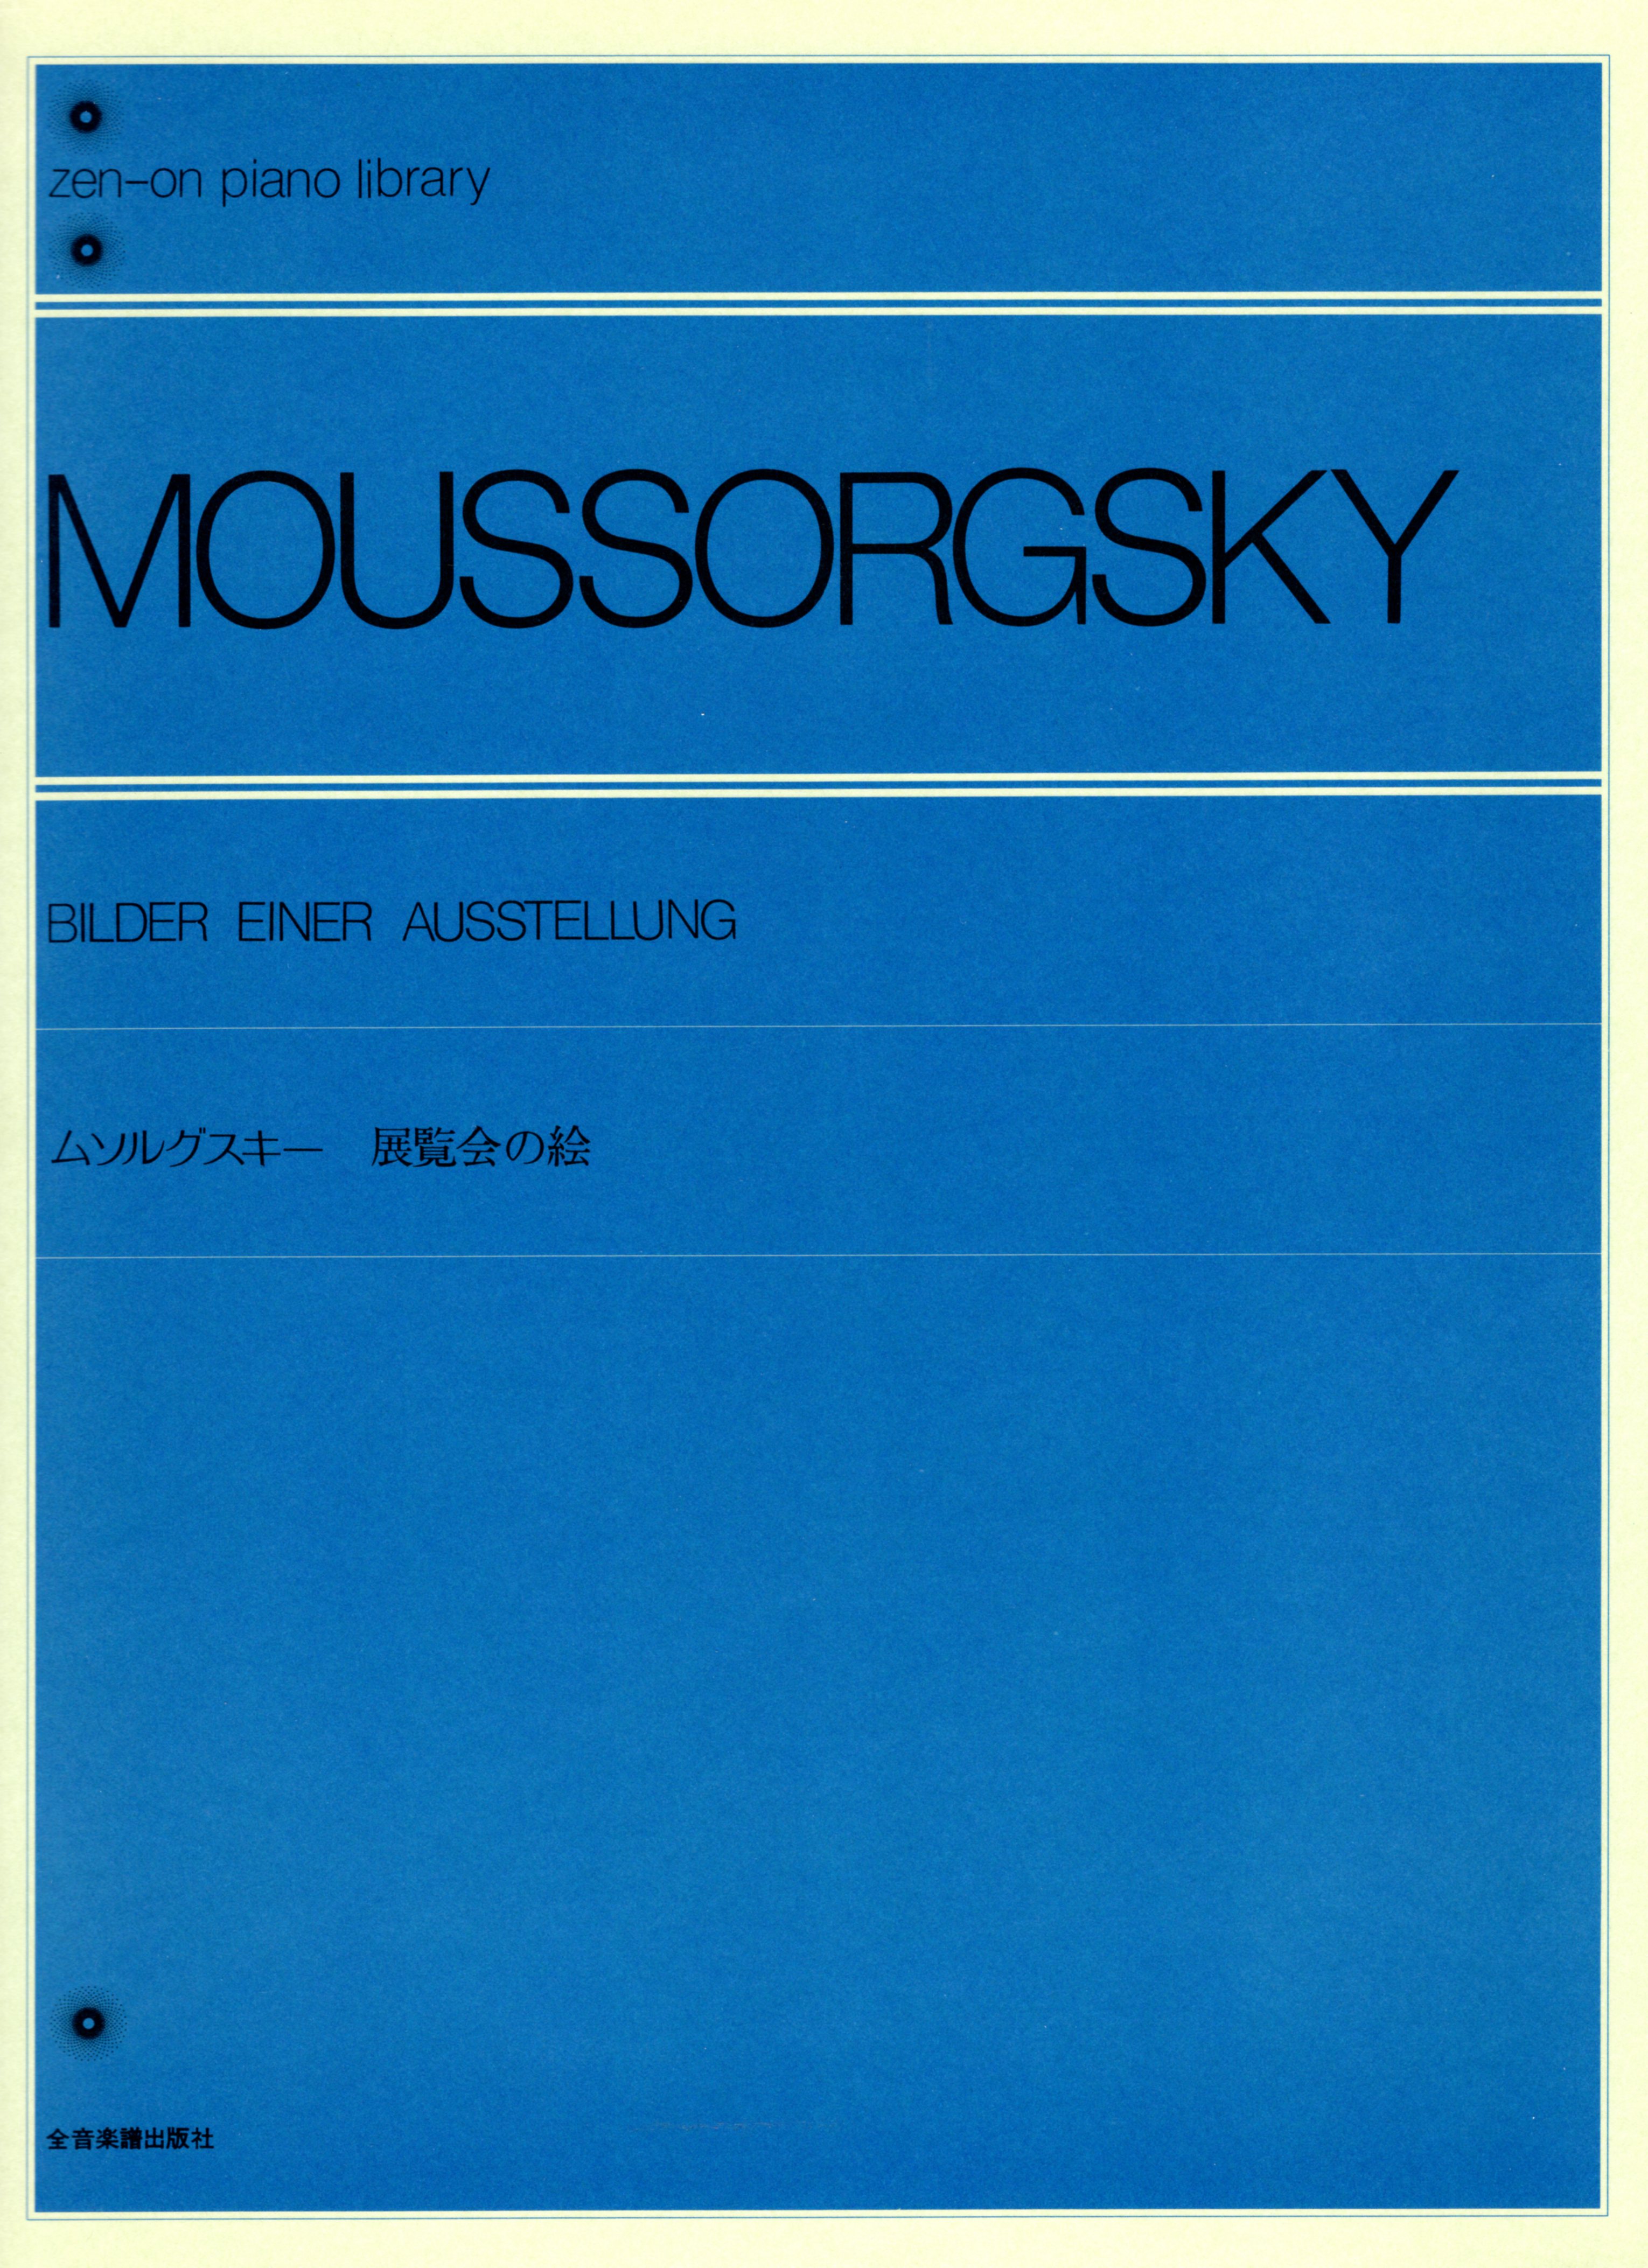 【獨奏鋼琴樂譜】穆索斯基"展覽會之畫" MUSSORGSKY Bilder einer Ausstellung